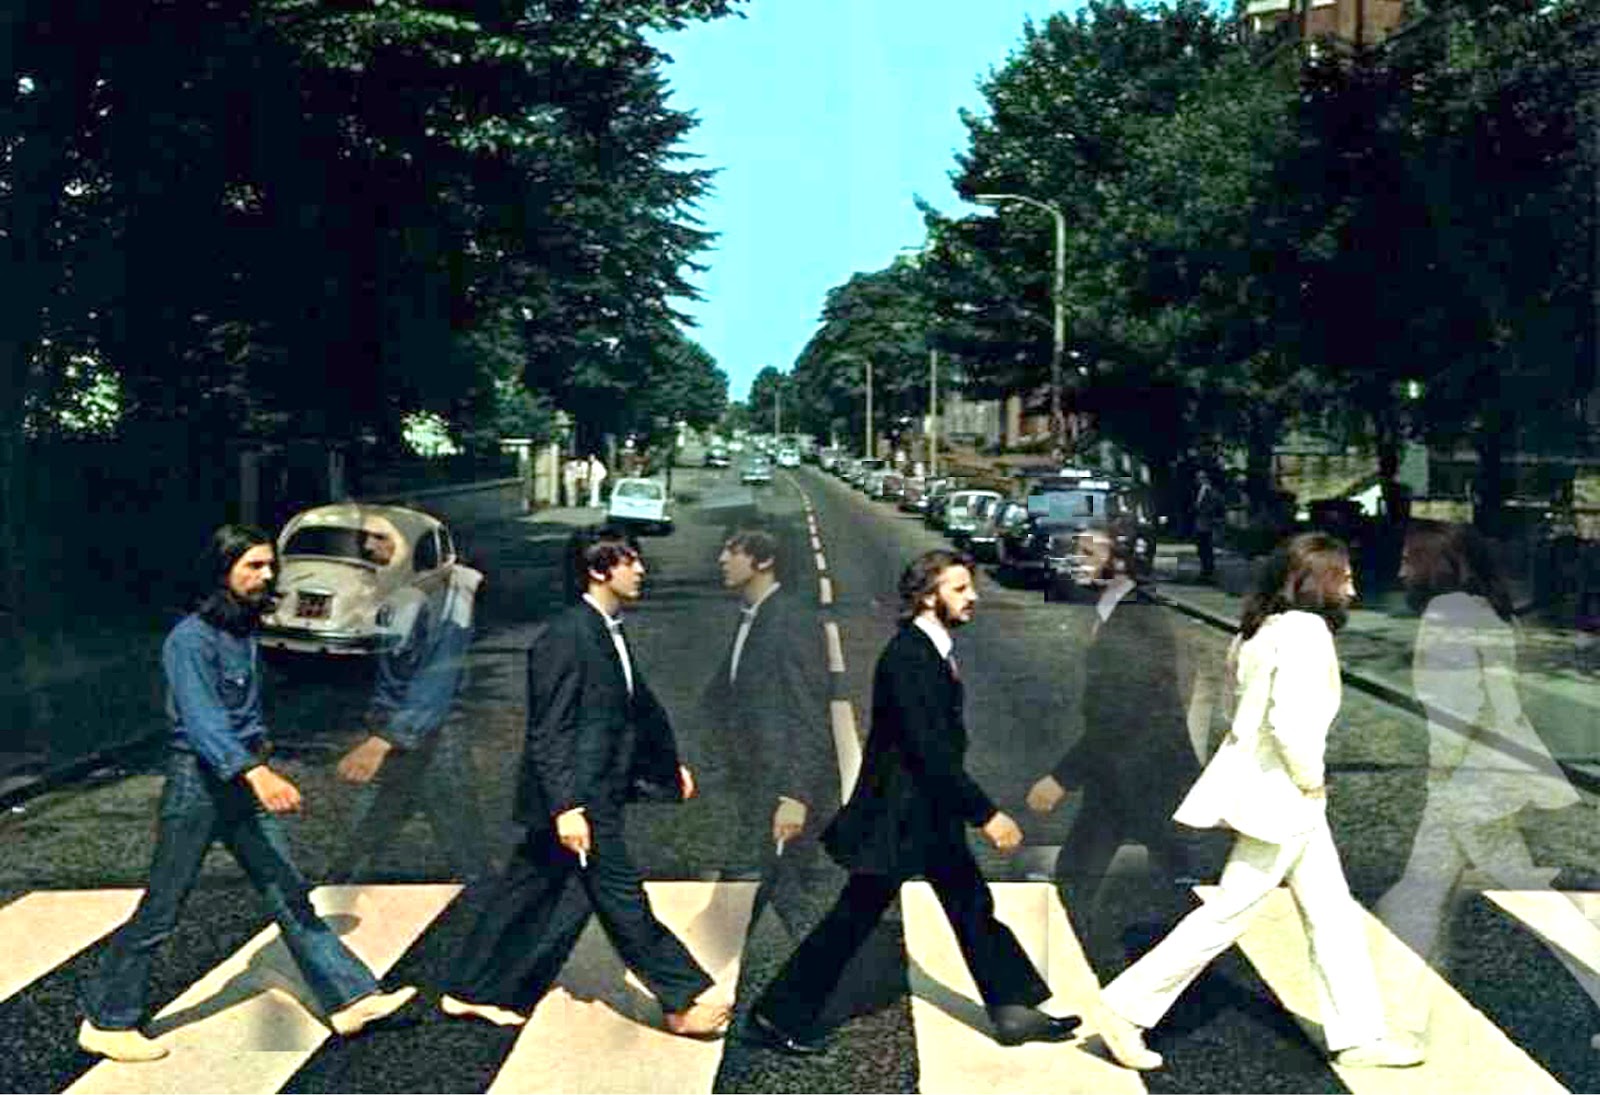 Soul and Sound Progressive: Abbey Road album cover parodies